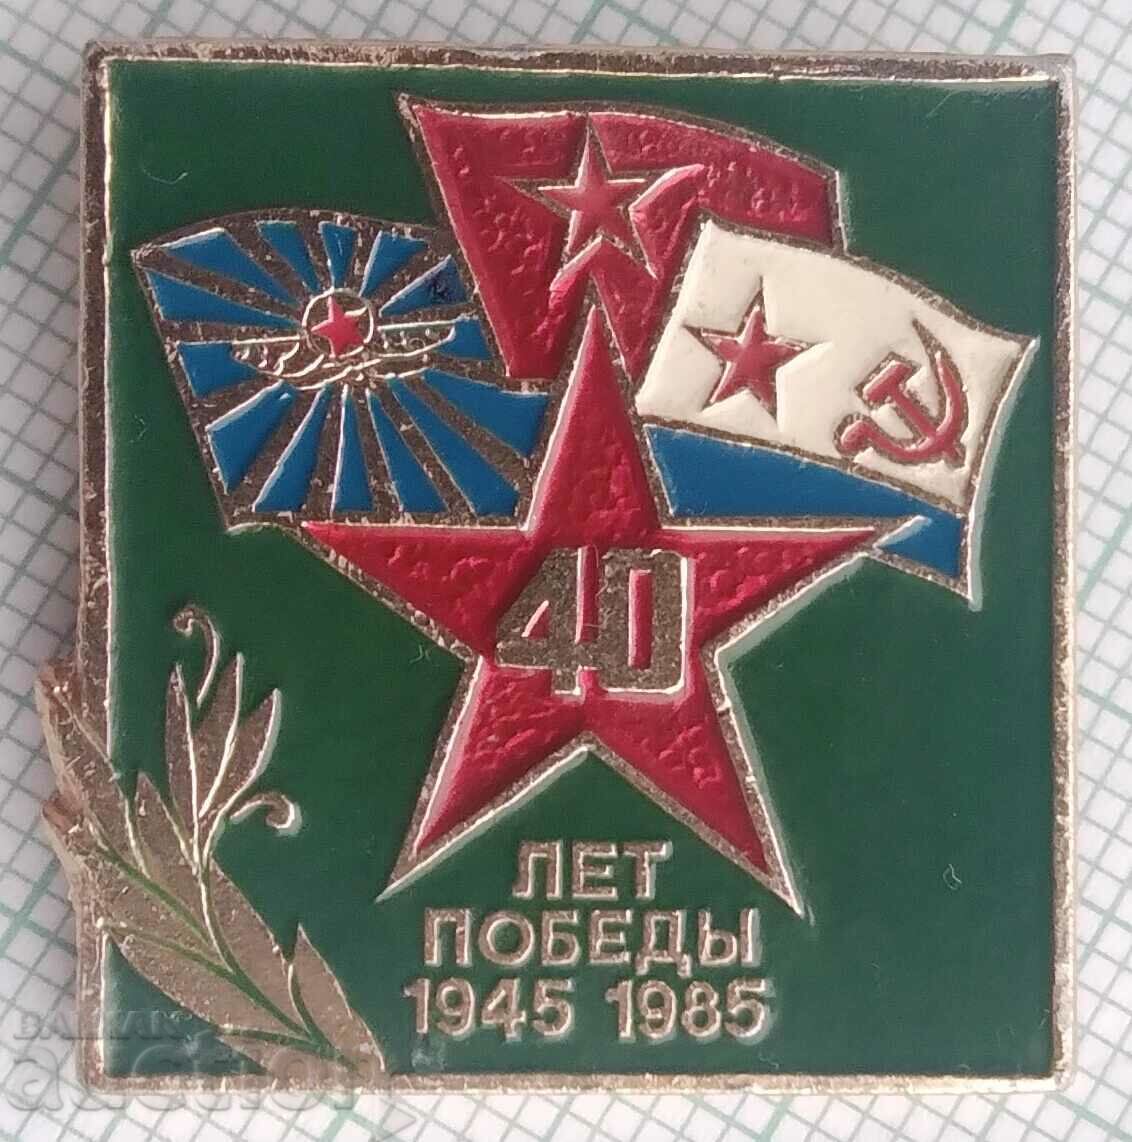 12112 aniversare - 40 de ani de victorie 1945-1985